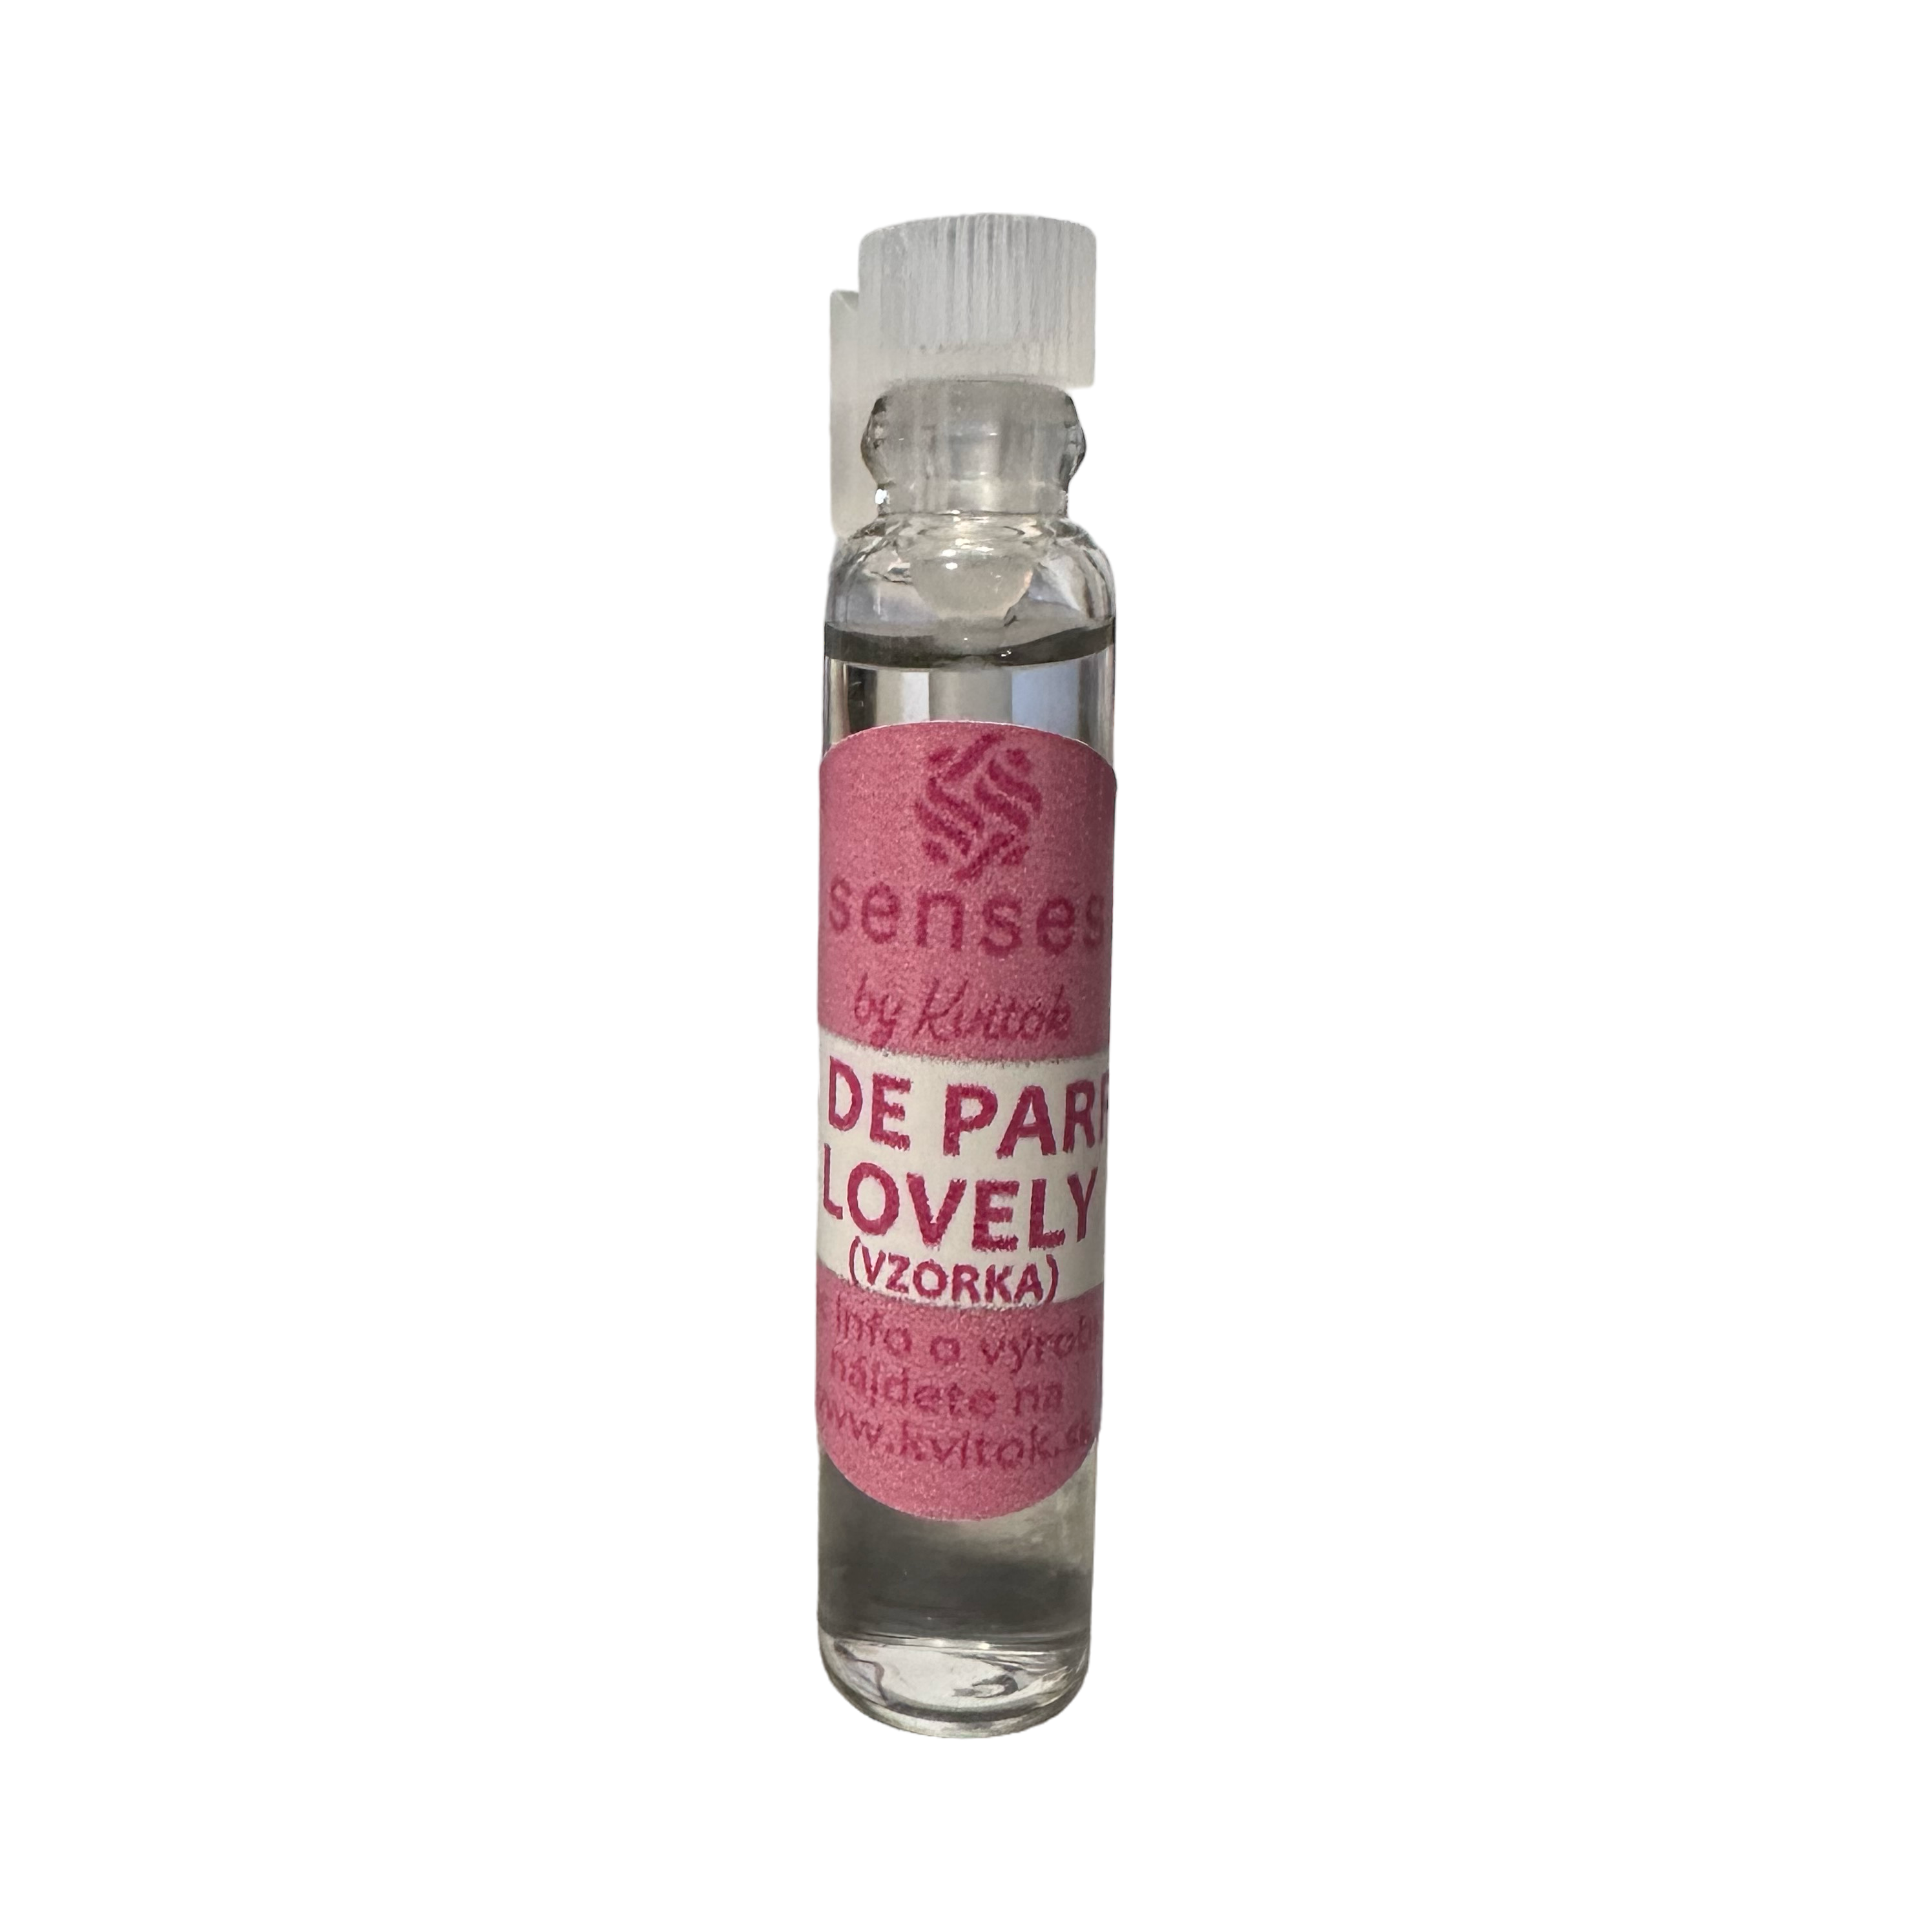 Kvitok Senses Toaletní parfém Lovely - vzorek (2 ml) - s vůní růže, vanilky a citrusů